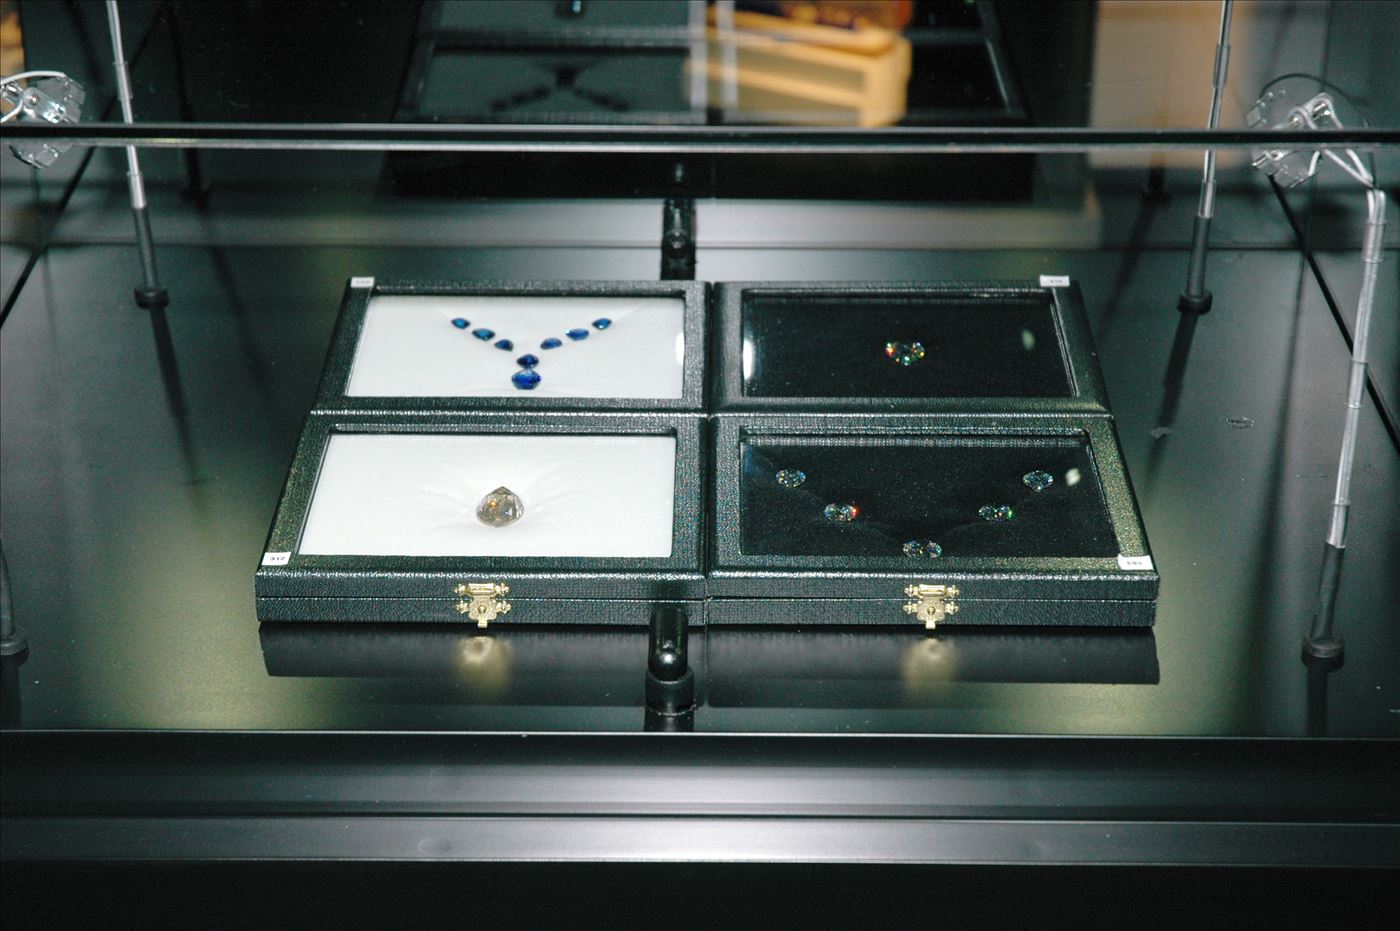 גלרייה - תערוכת תכשיטים במוזיאון - אבנר צופיוף 31.5.2006, 6 מתוך 22